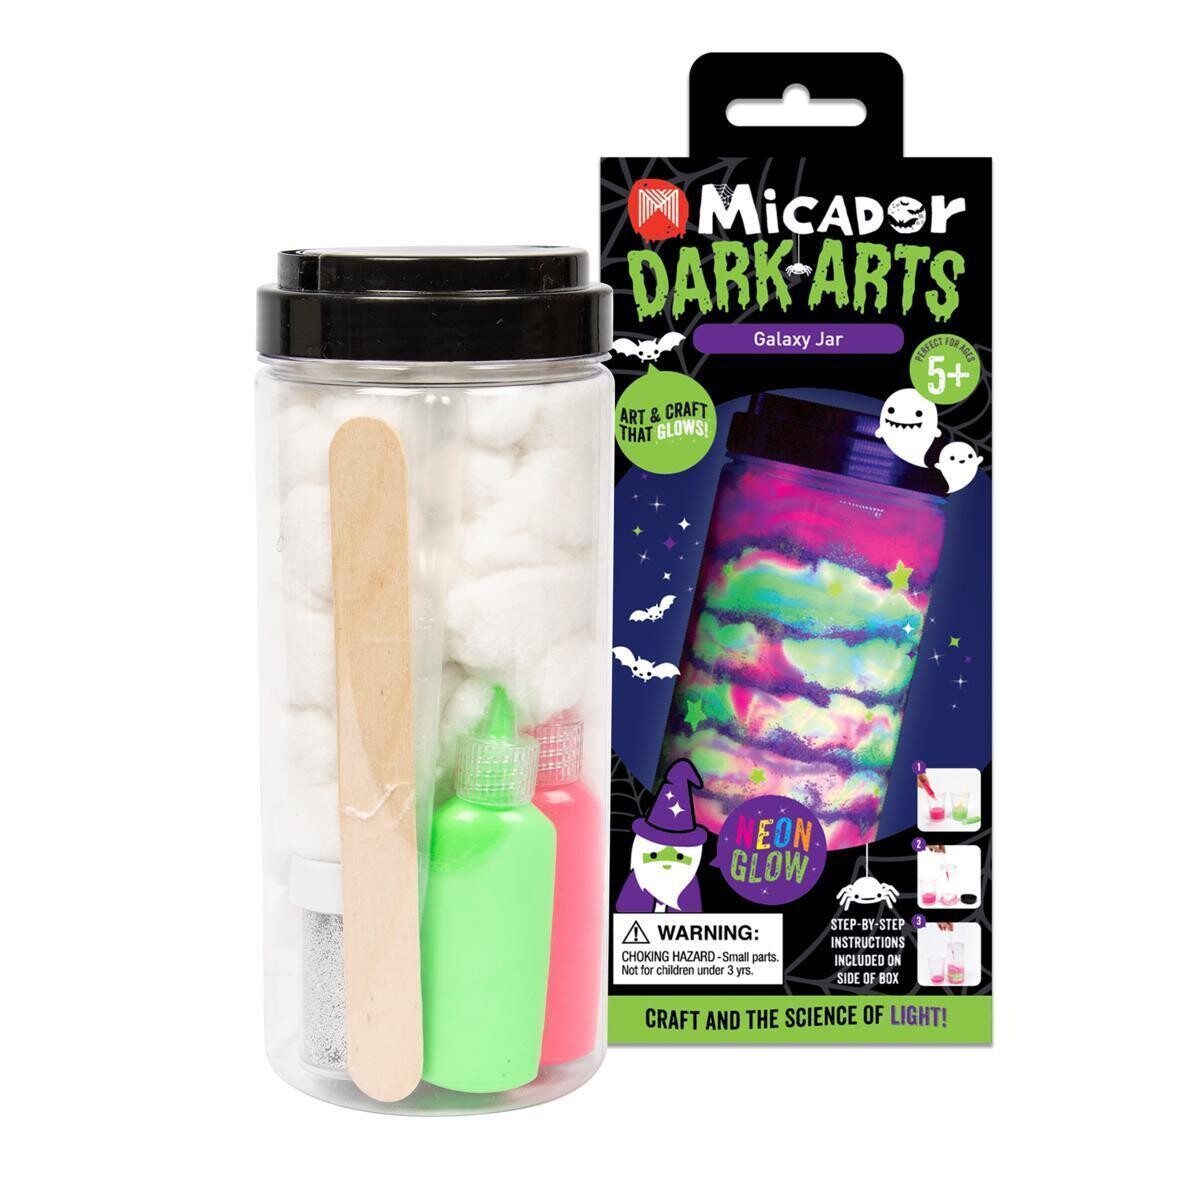 Micador Dark Arts Neon Glow Galaxy Jar Craft Set for ages 5+